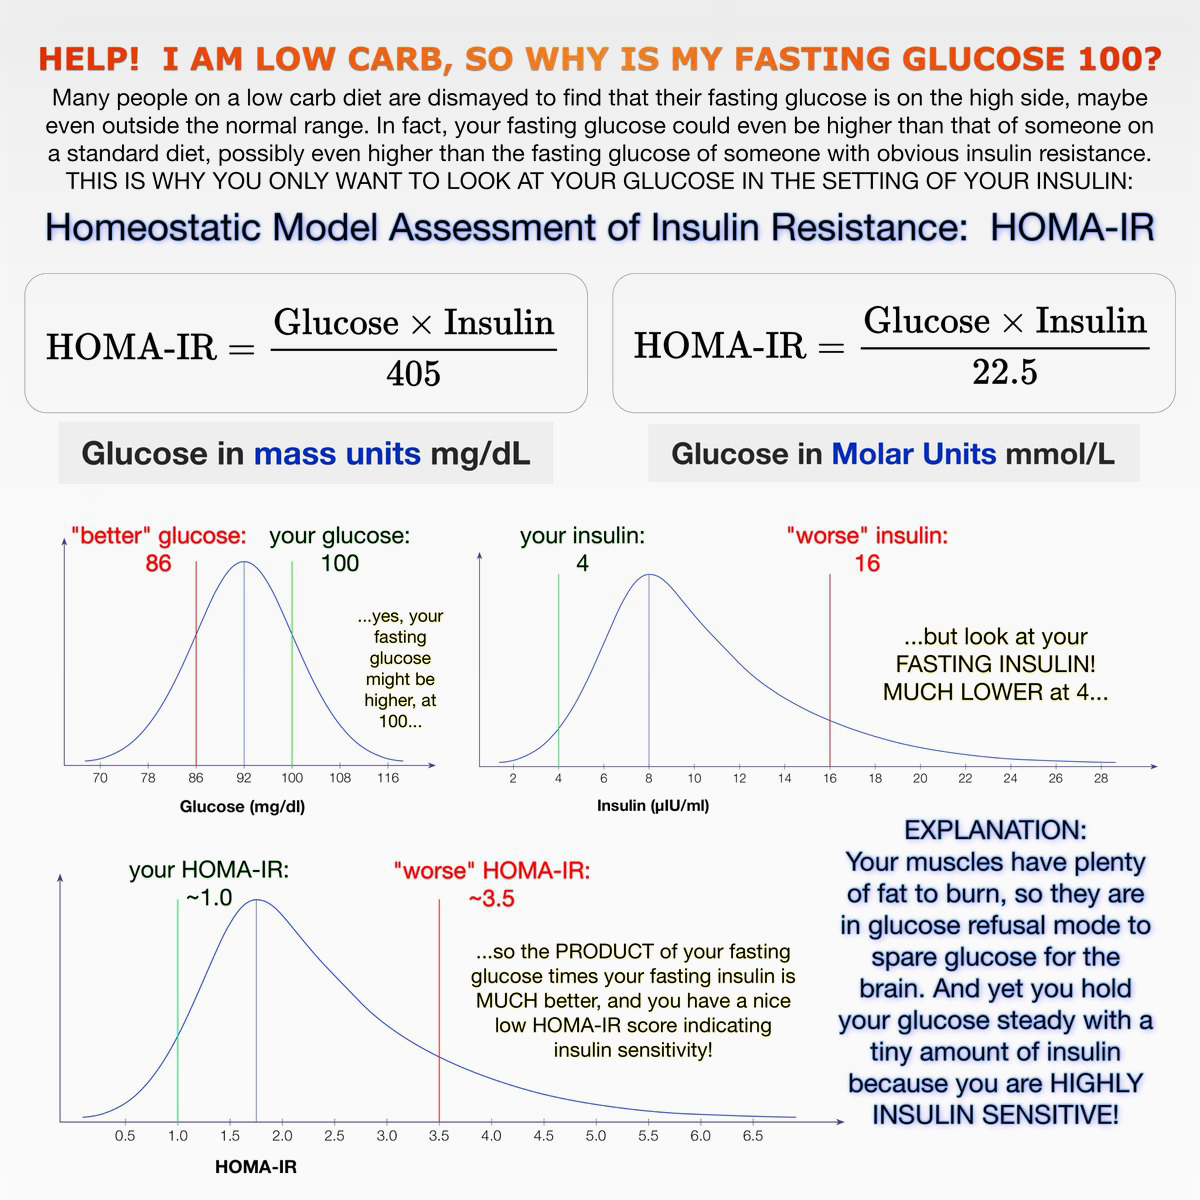 Fasting Insulin Levels Chart